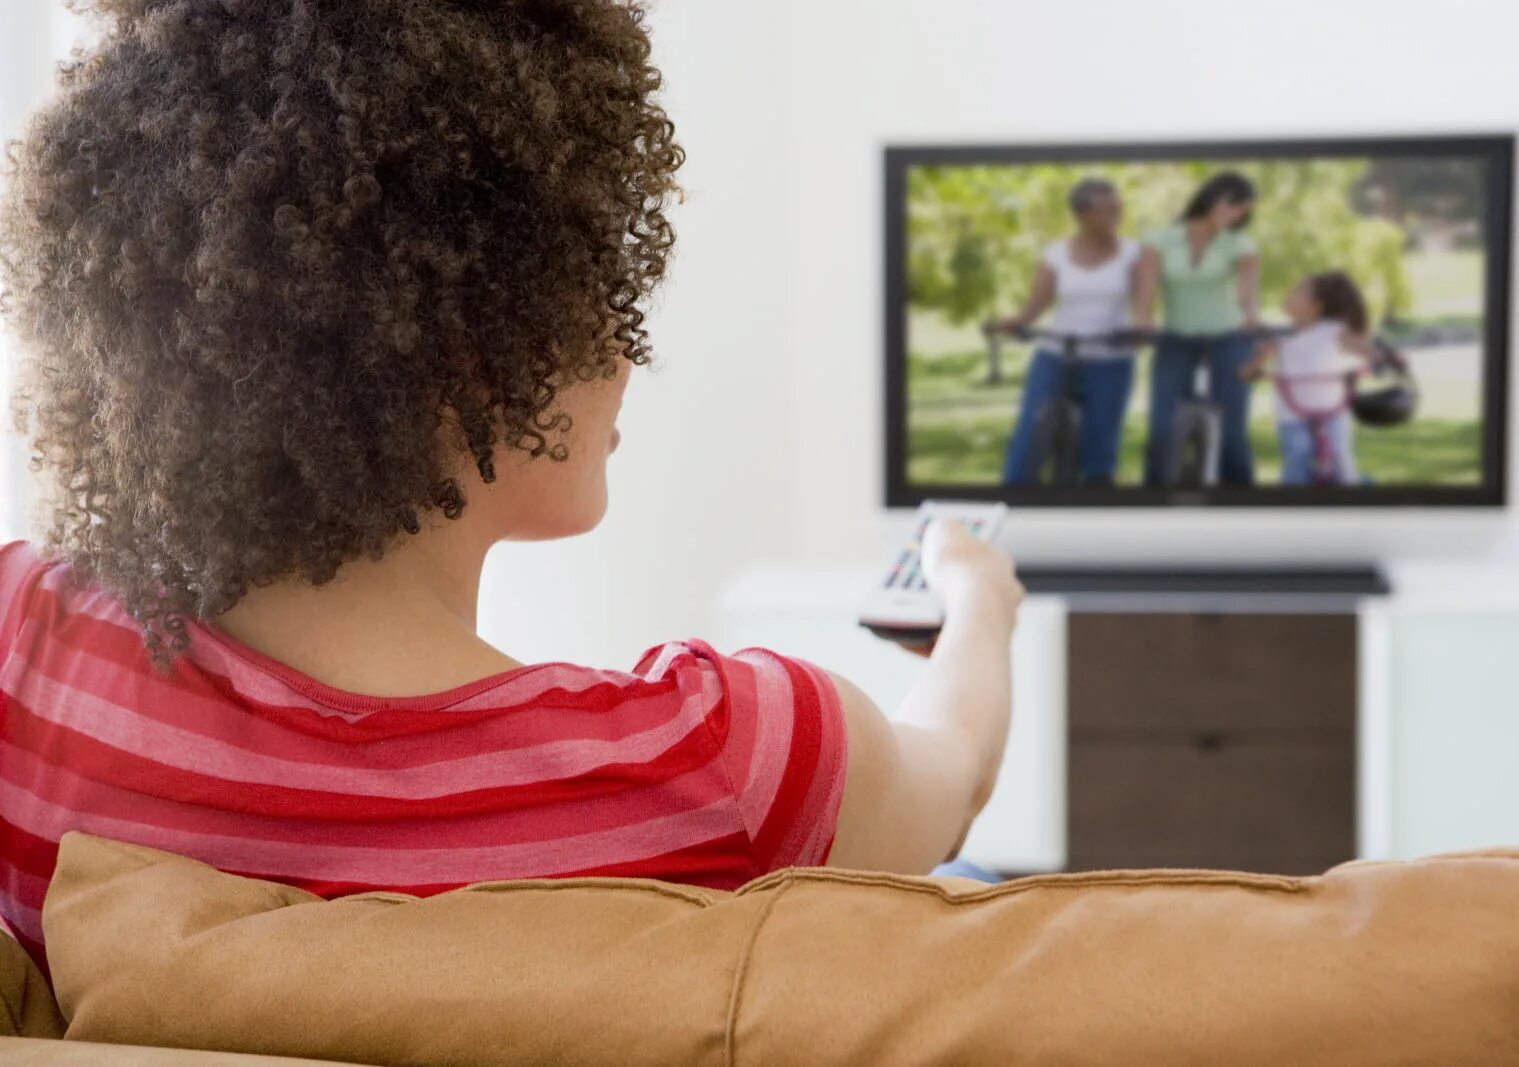 Подростки смотрят телевизор. Подросток перед телевизором. Подросток перед теликом. Женщина с детьми перед телевизором. Подросток смотрит телевизор фото.